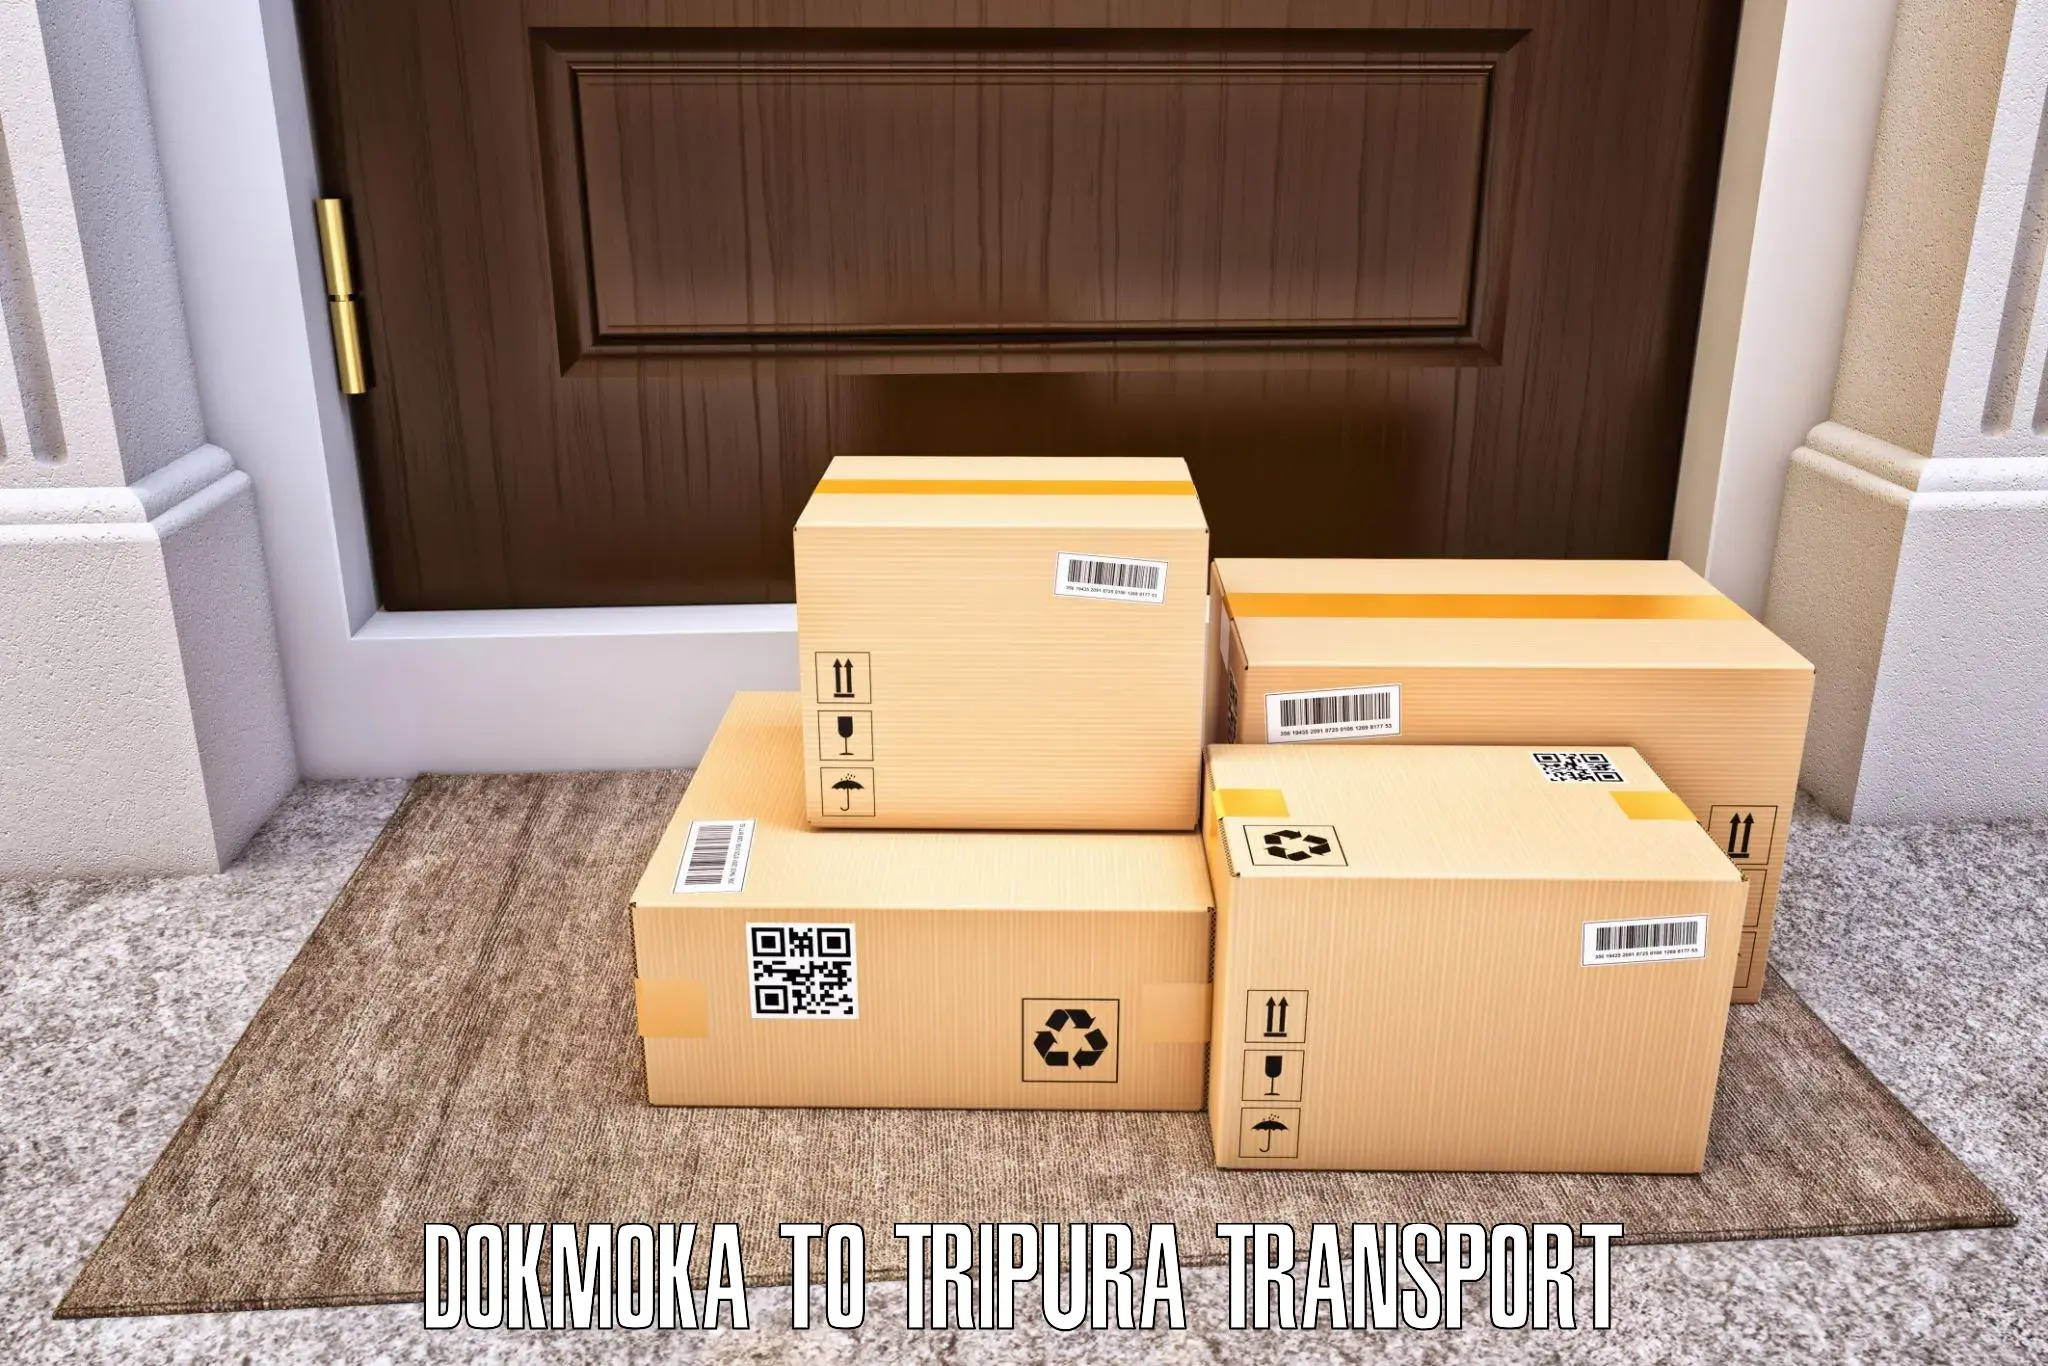 Daily parcel service transport Dokmoka to Kailashahar